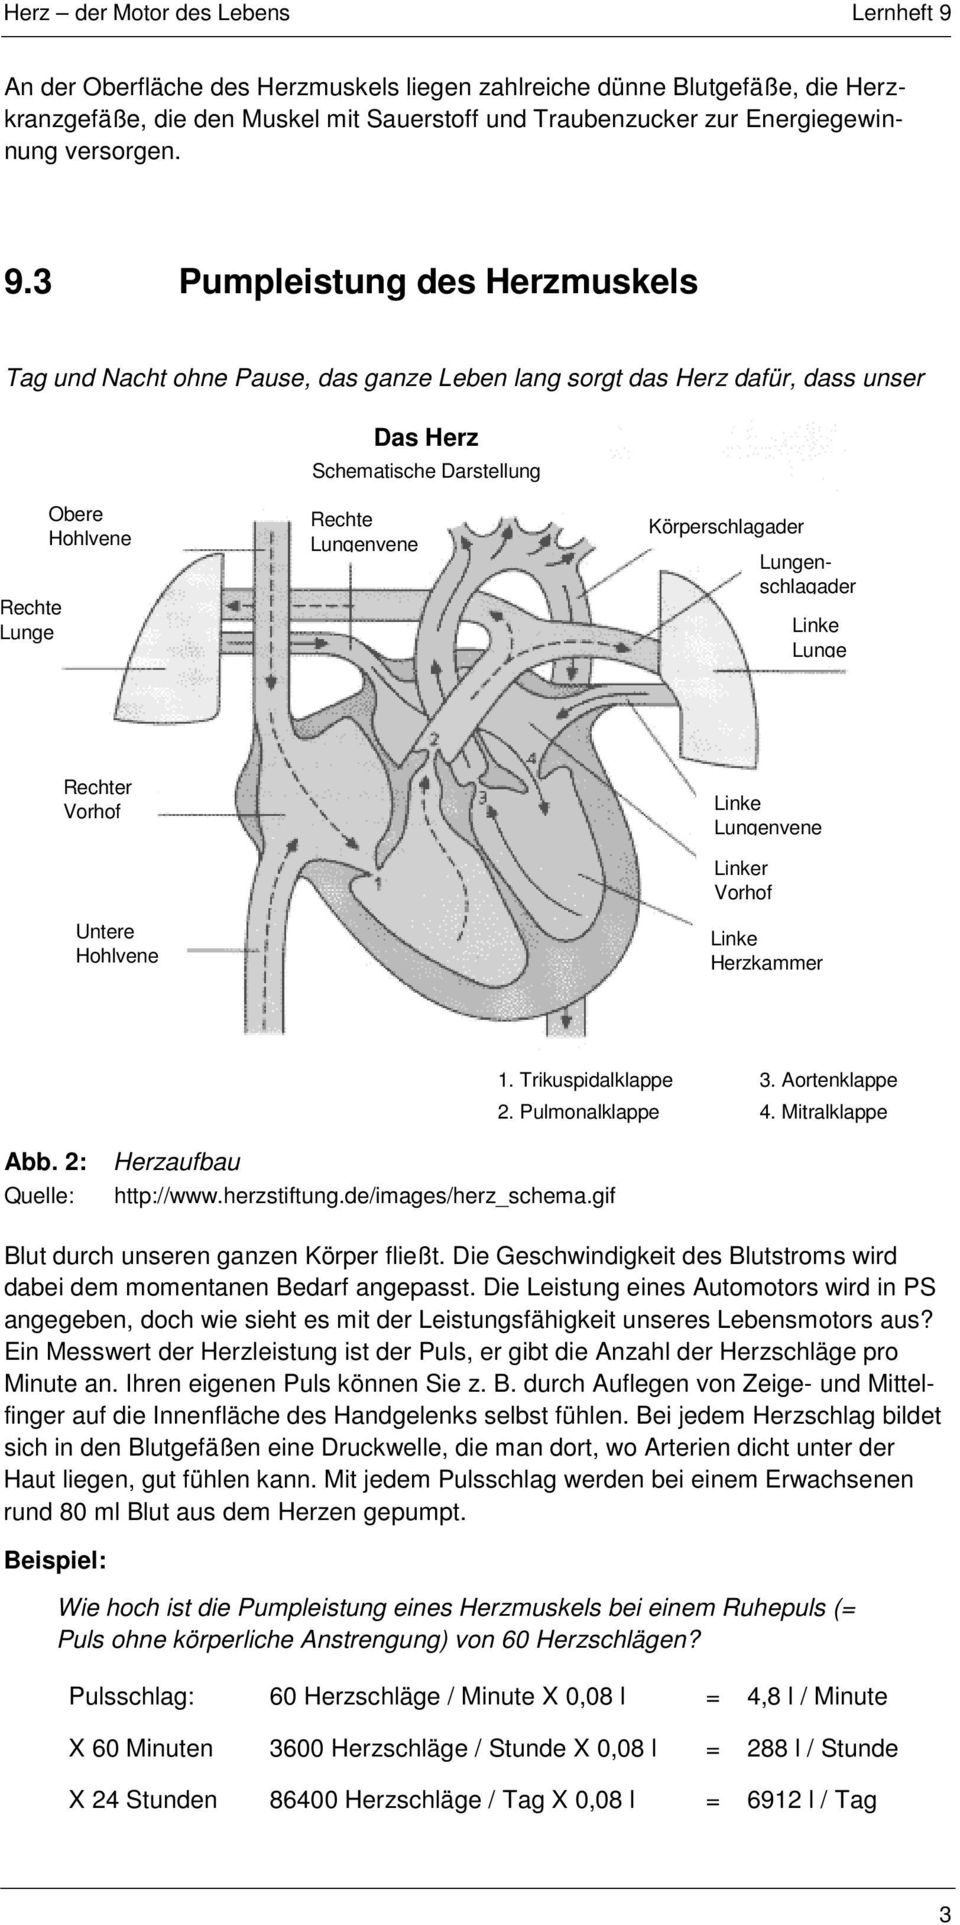 Körperschlagader Lungenschlagader Linke Lunge Rechter Vorhof Untere Hohlvene Linke Lungenvene Linker Vorhof Linke Herzkammer 1. Trikuspidalklappe 3. Aortenklappe 2. Pulmonalklappe 4. Mitralklappe Abb.